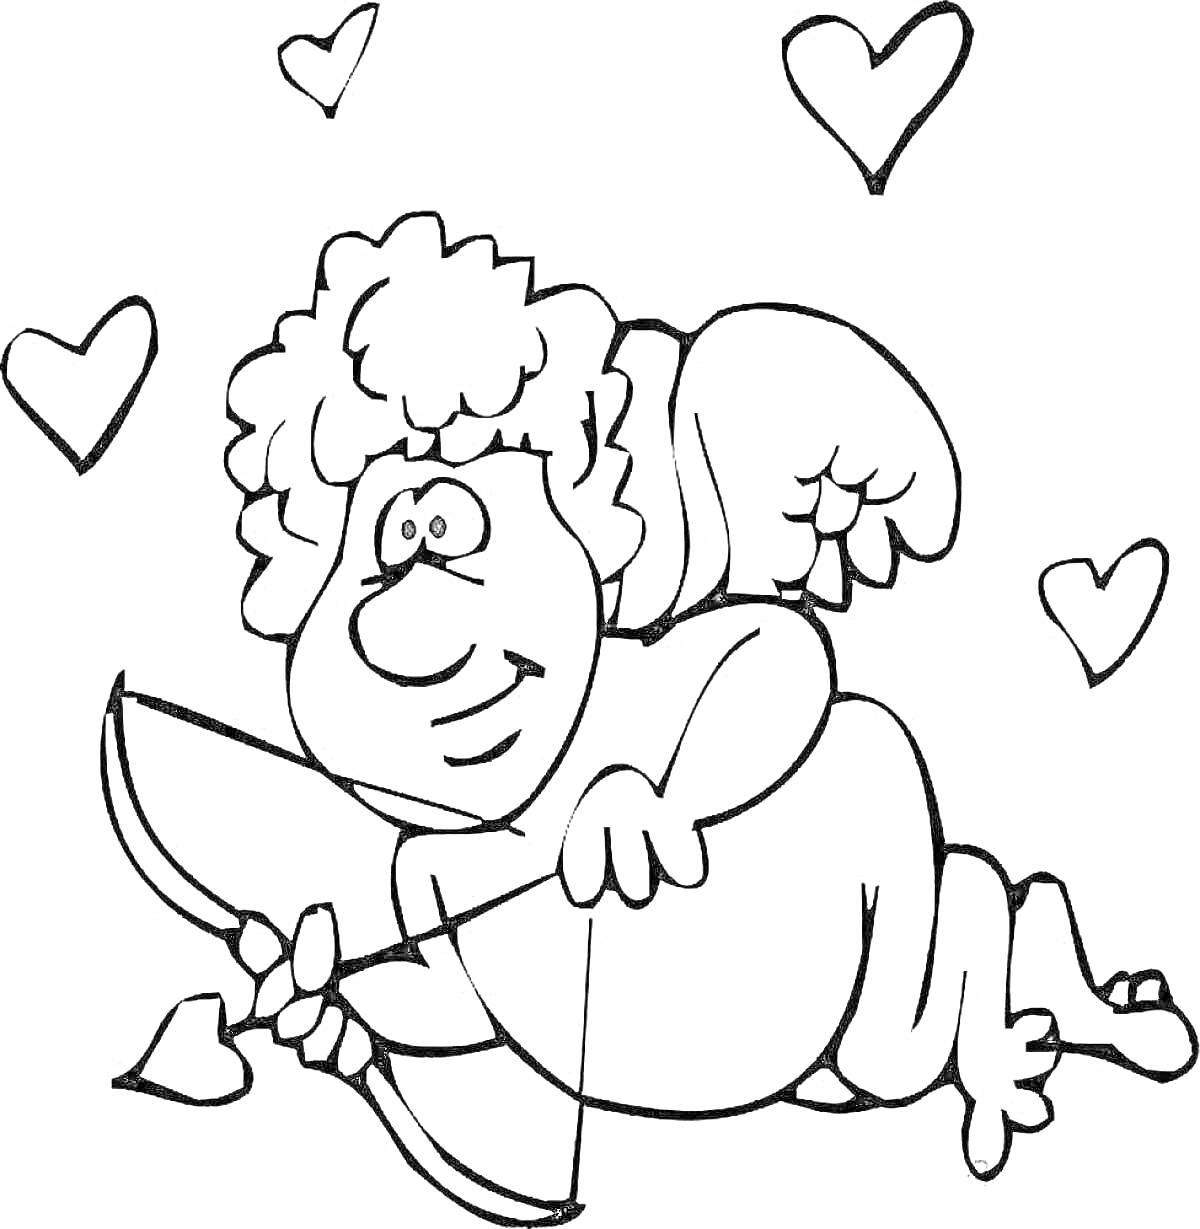 Раскраска Купидон с луком и стрелой, парящий среди сердец